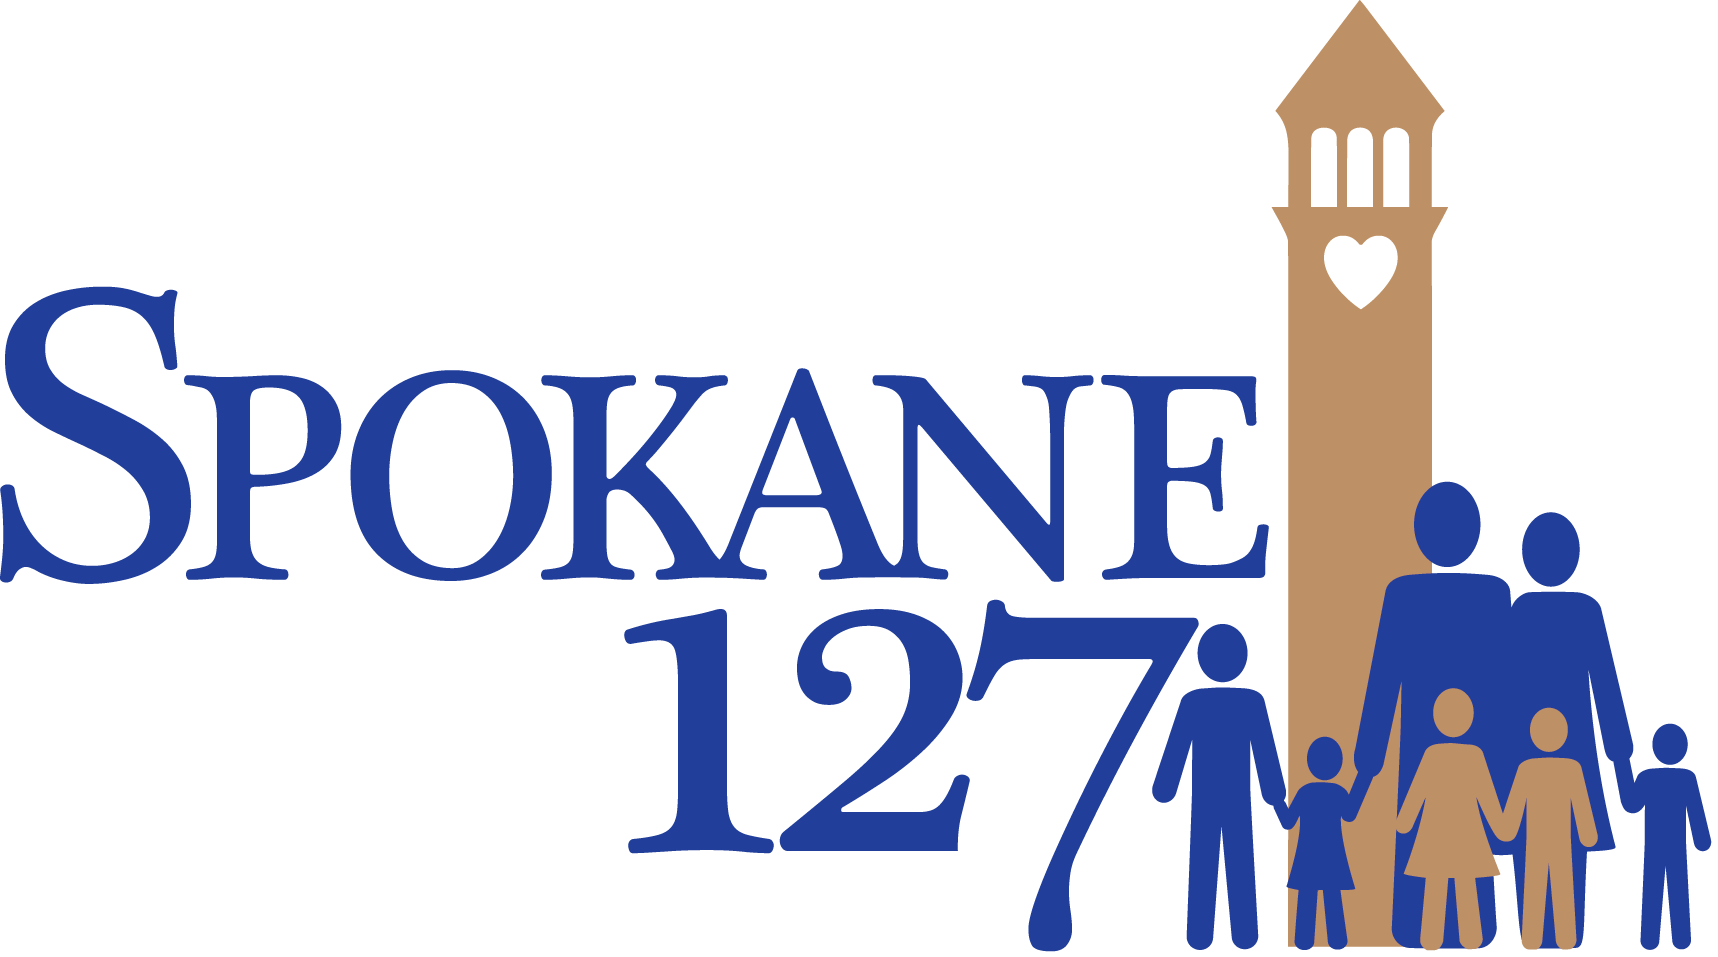 About Spokane127